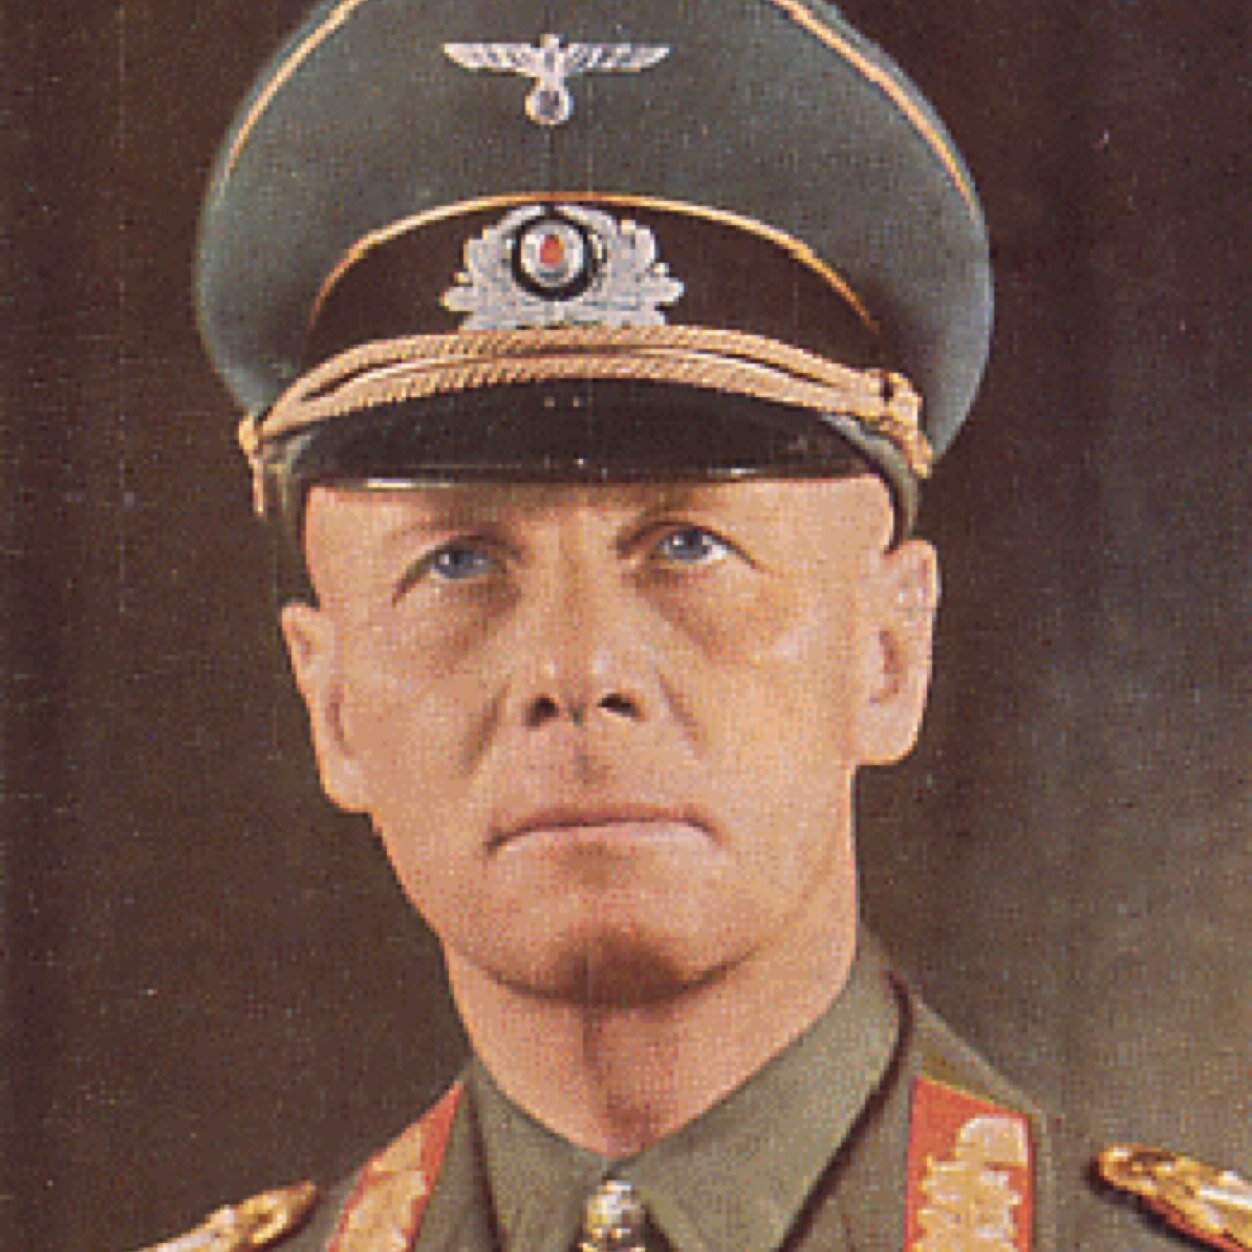 Resultado de imagen para Fotos de Erwin Rommel,